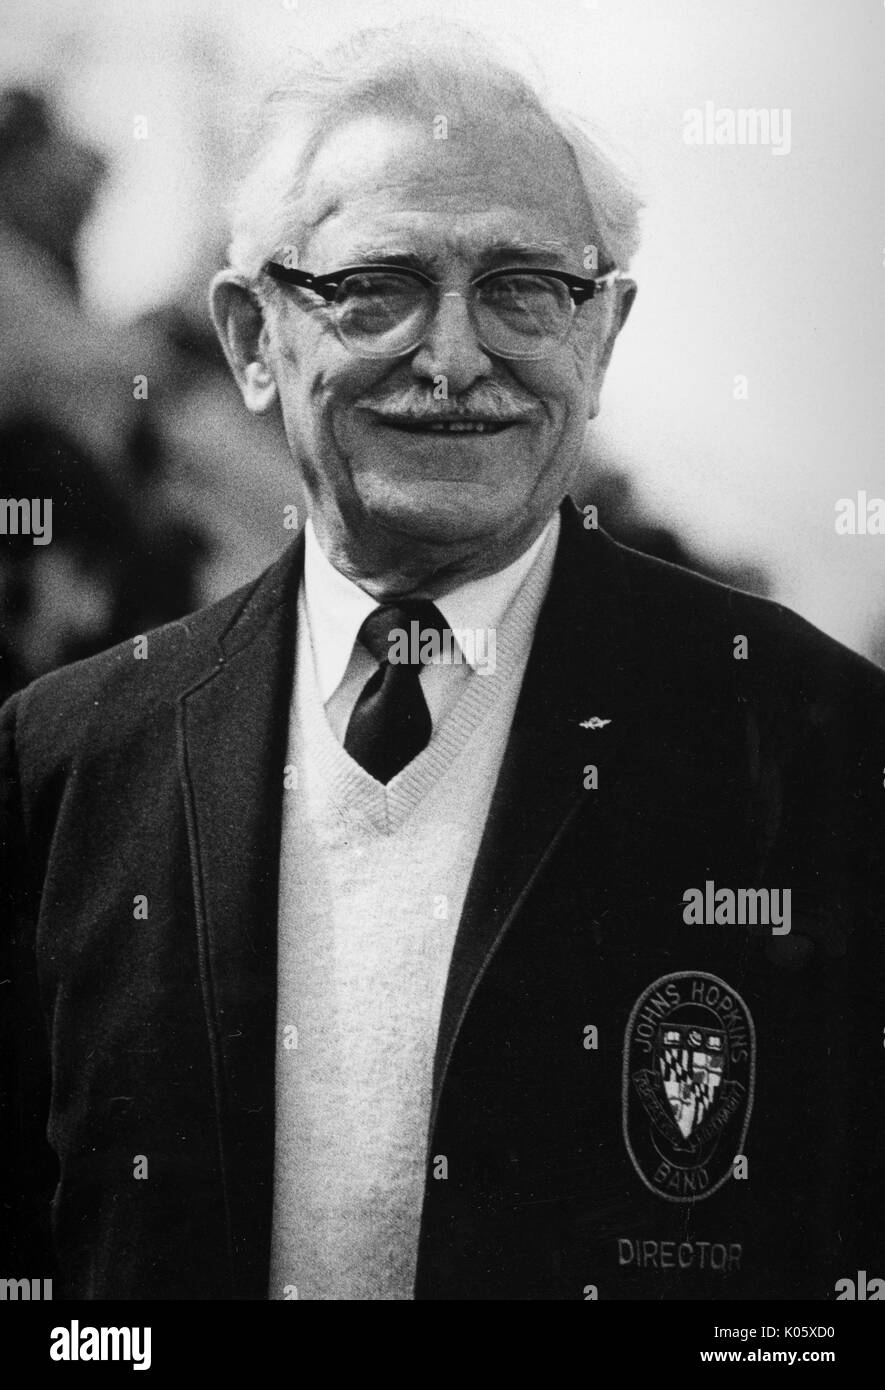 Portrait de mi-longueur du Directeur Musical Conrad Gebelein, vêtu d'une veste sombre avec un chandail et barre d'en-dessous, a une expression du visage souriant et lunettes, 1960. Banque D'Images